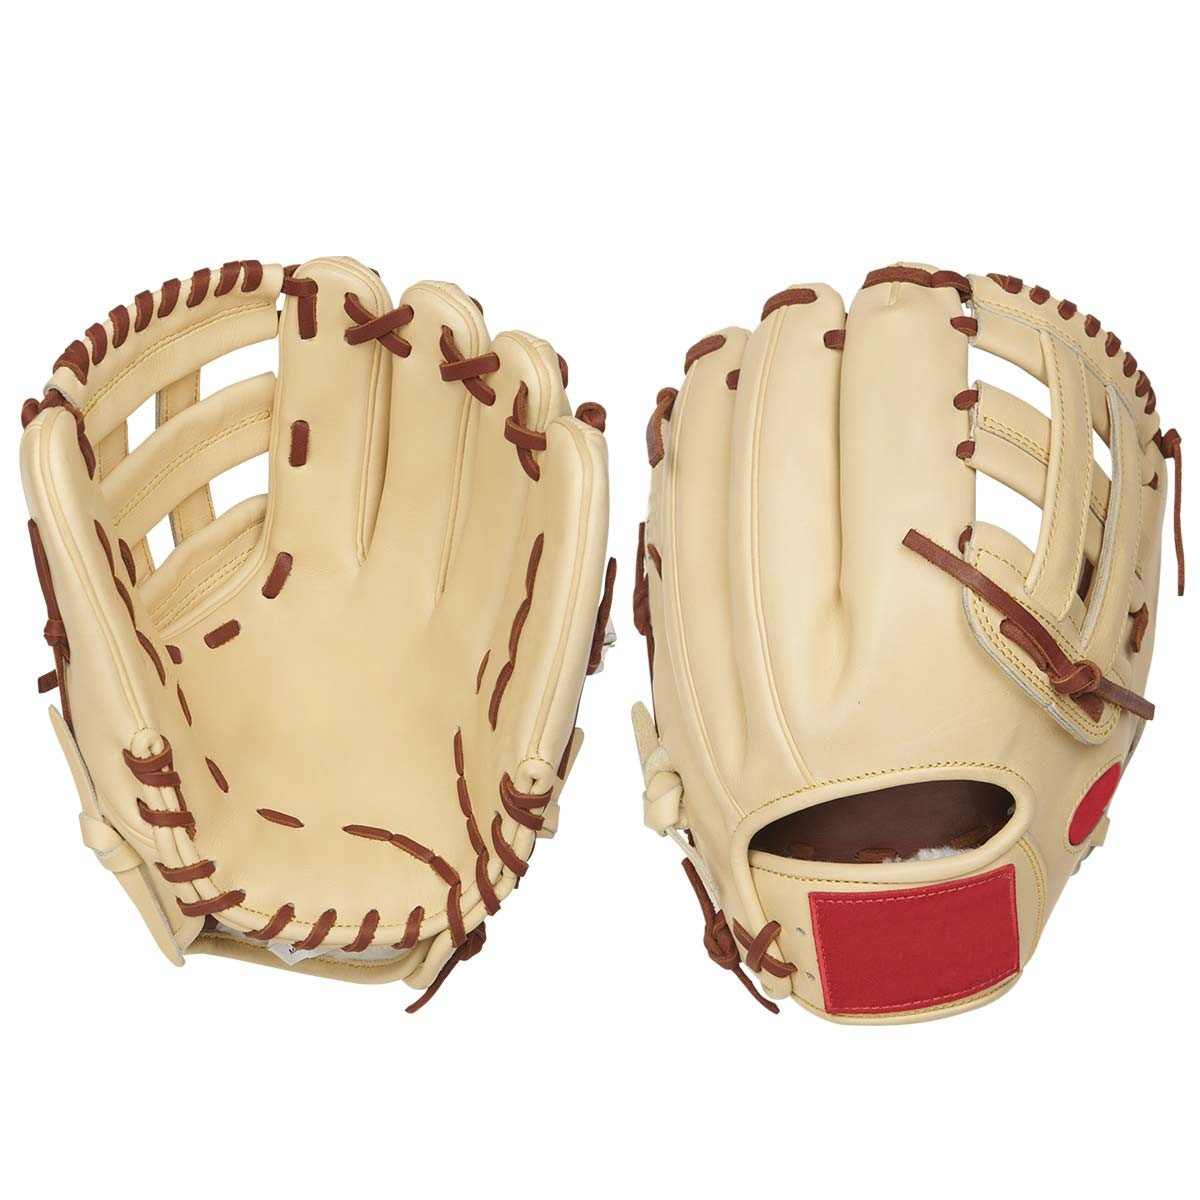 Full-grain kip leather comfortable hand fit infield 12.25" baseball gloves